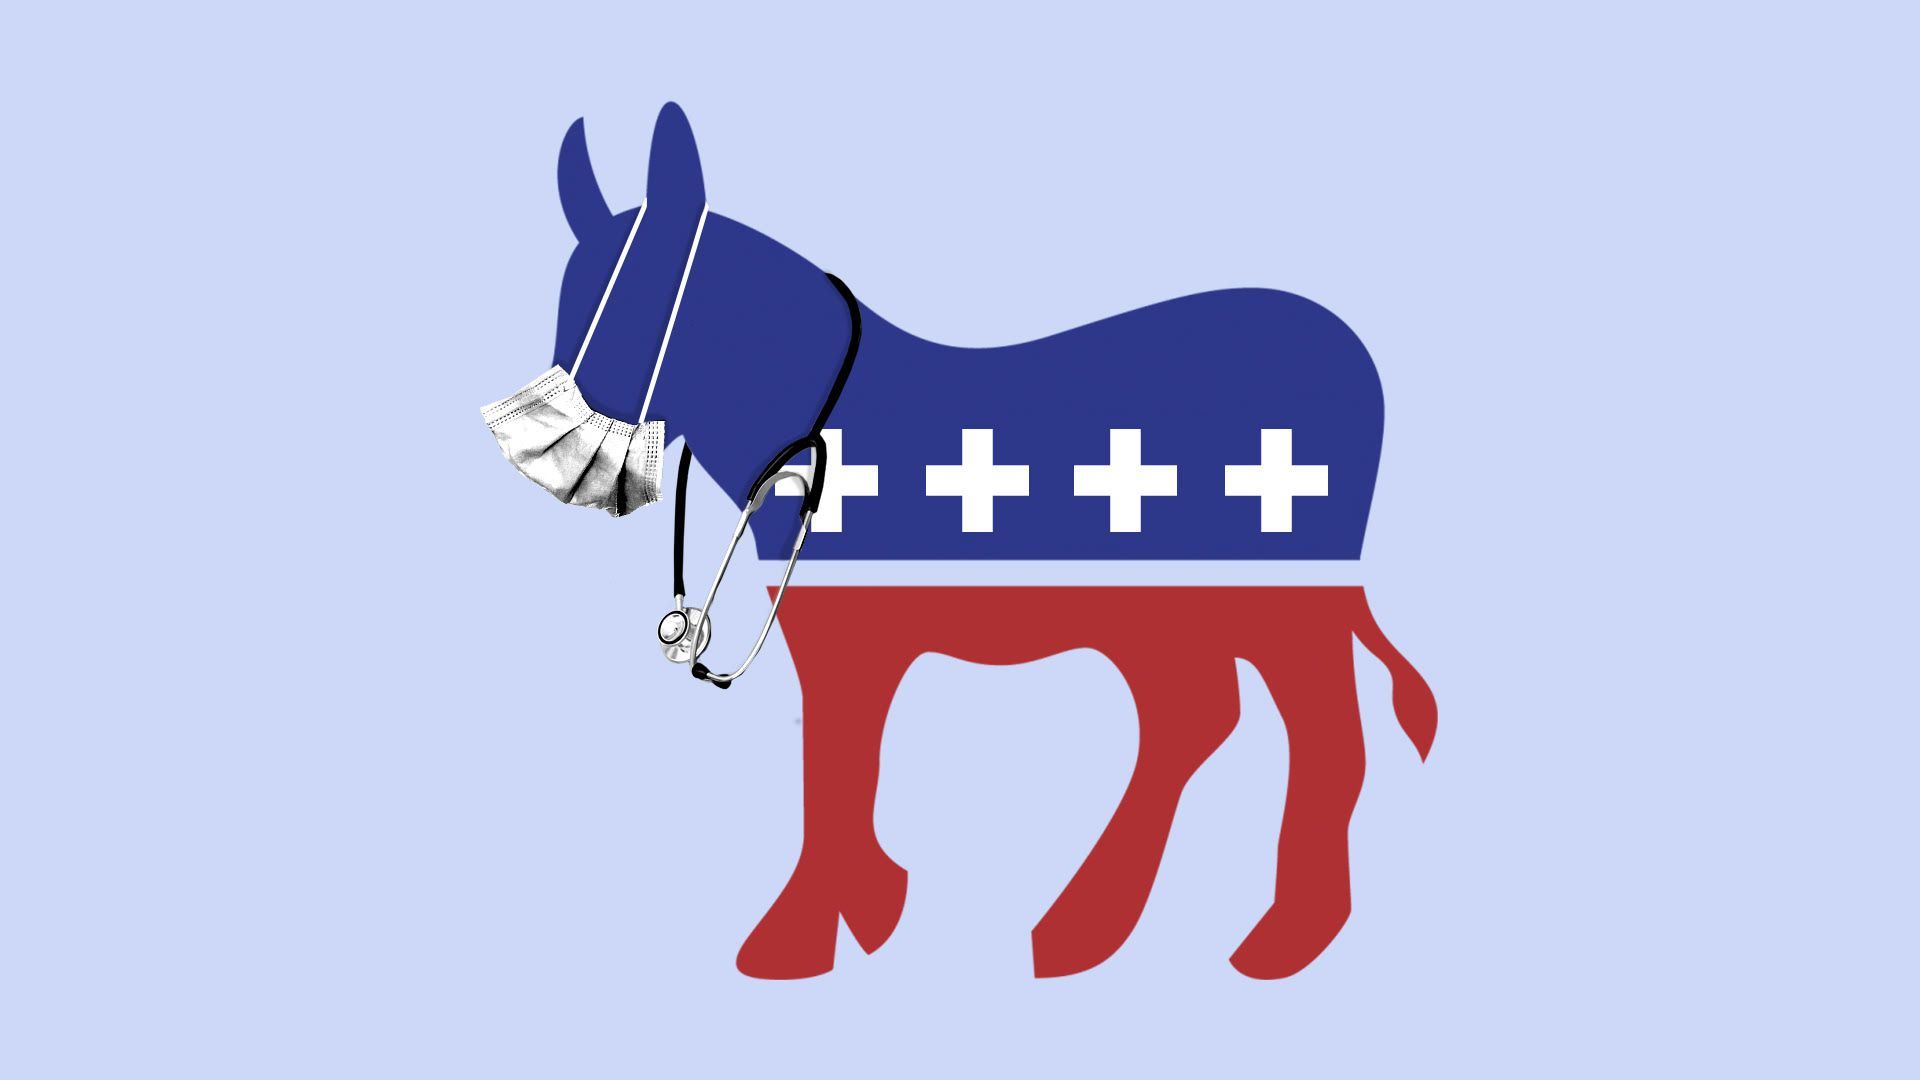 Illustration of democratic donkey wearing stethoscope and medical mask